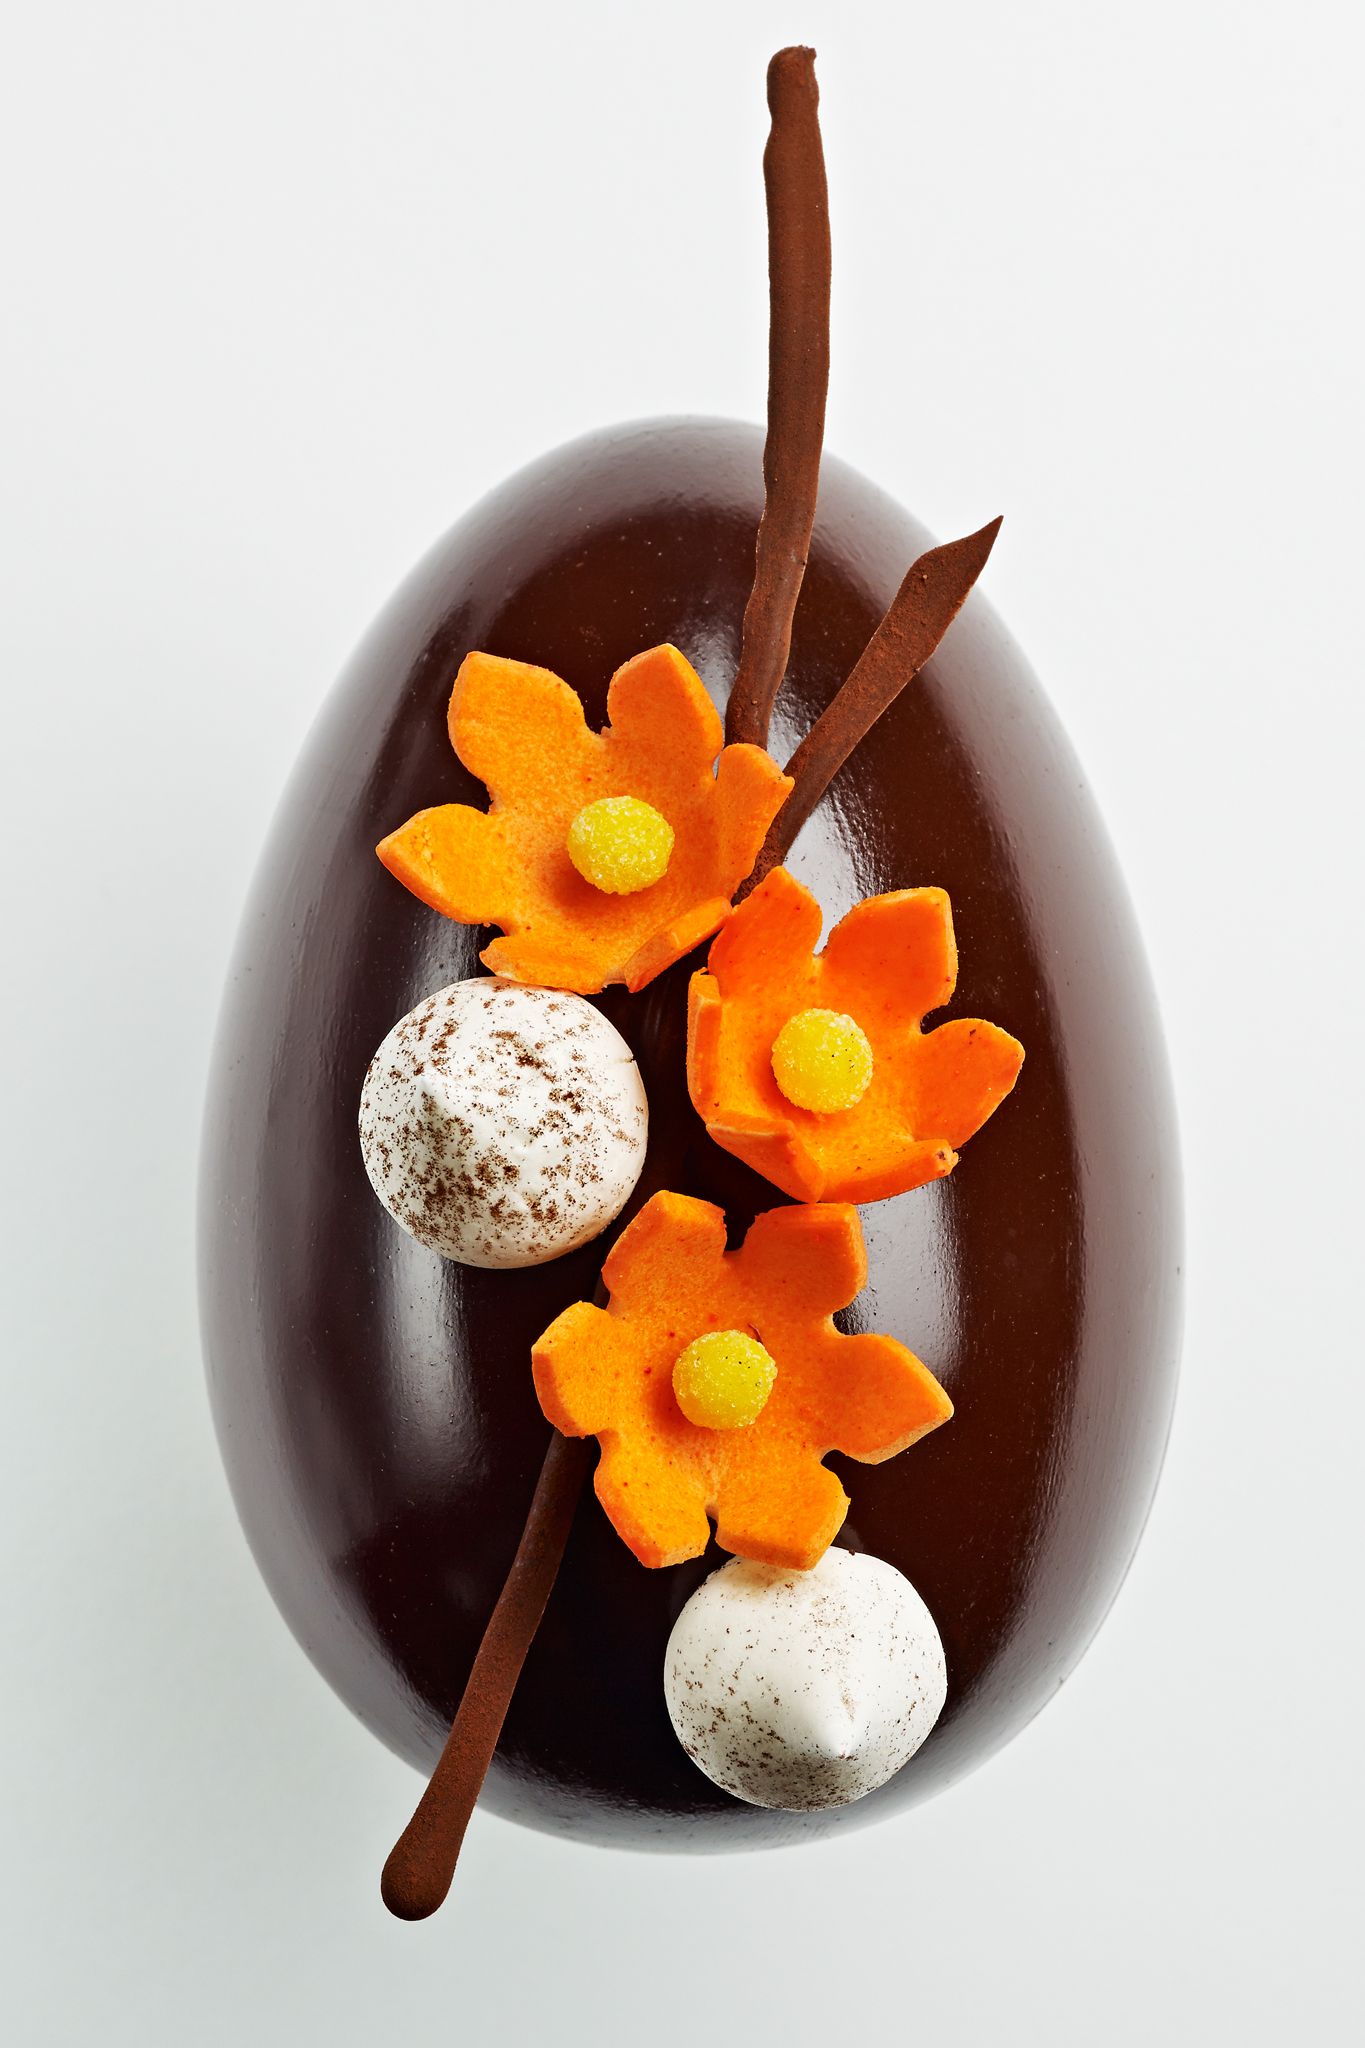 48 Bonbons de chocolat Ganaches & Pralinés | L'Eclair de Génie